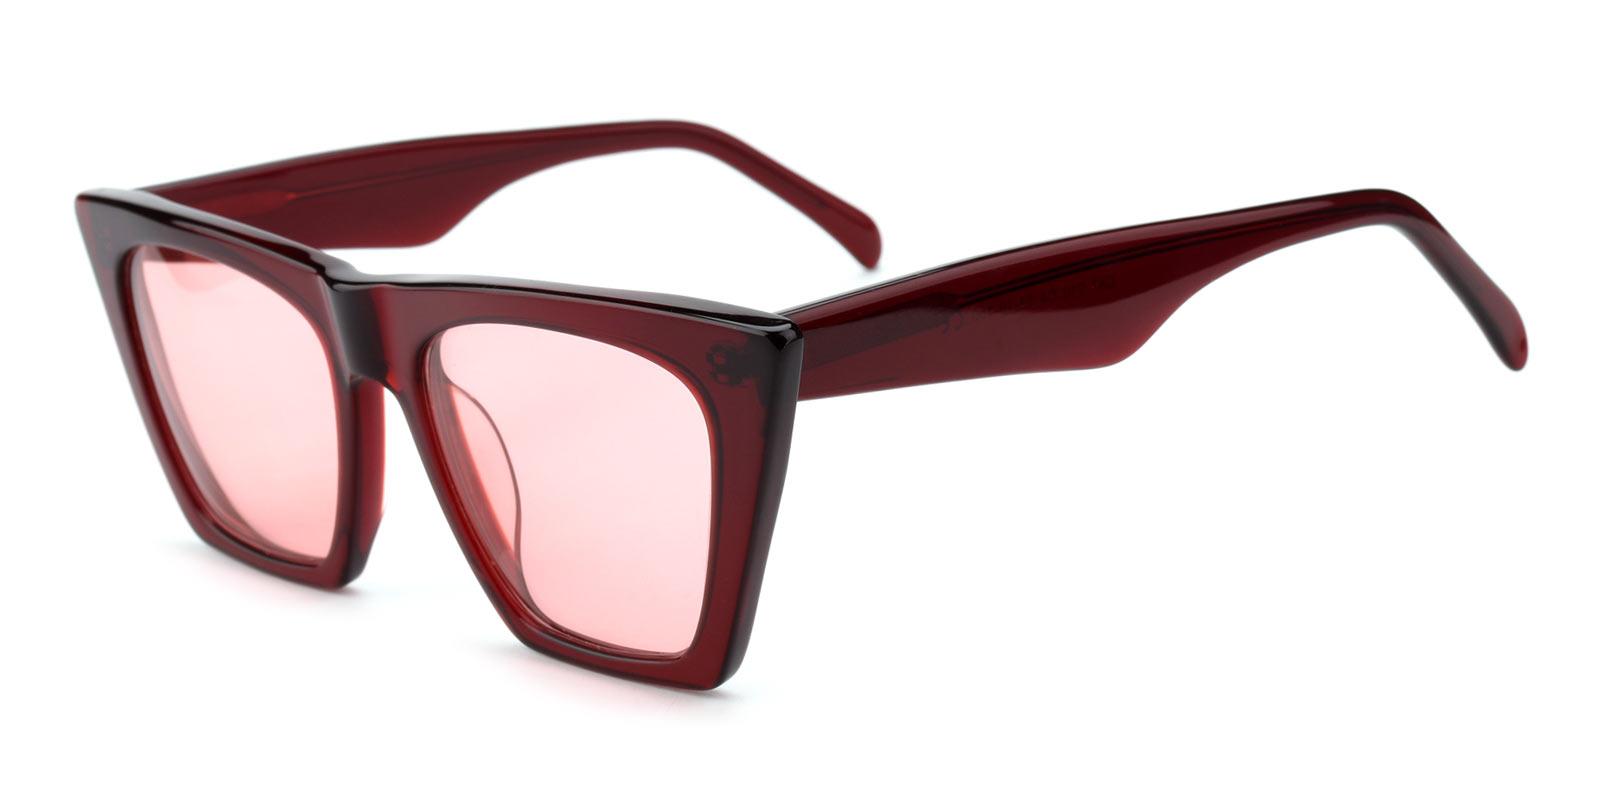 Alva-Red-Cat-Acetate-Sunglasses-detail